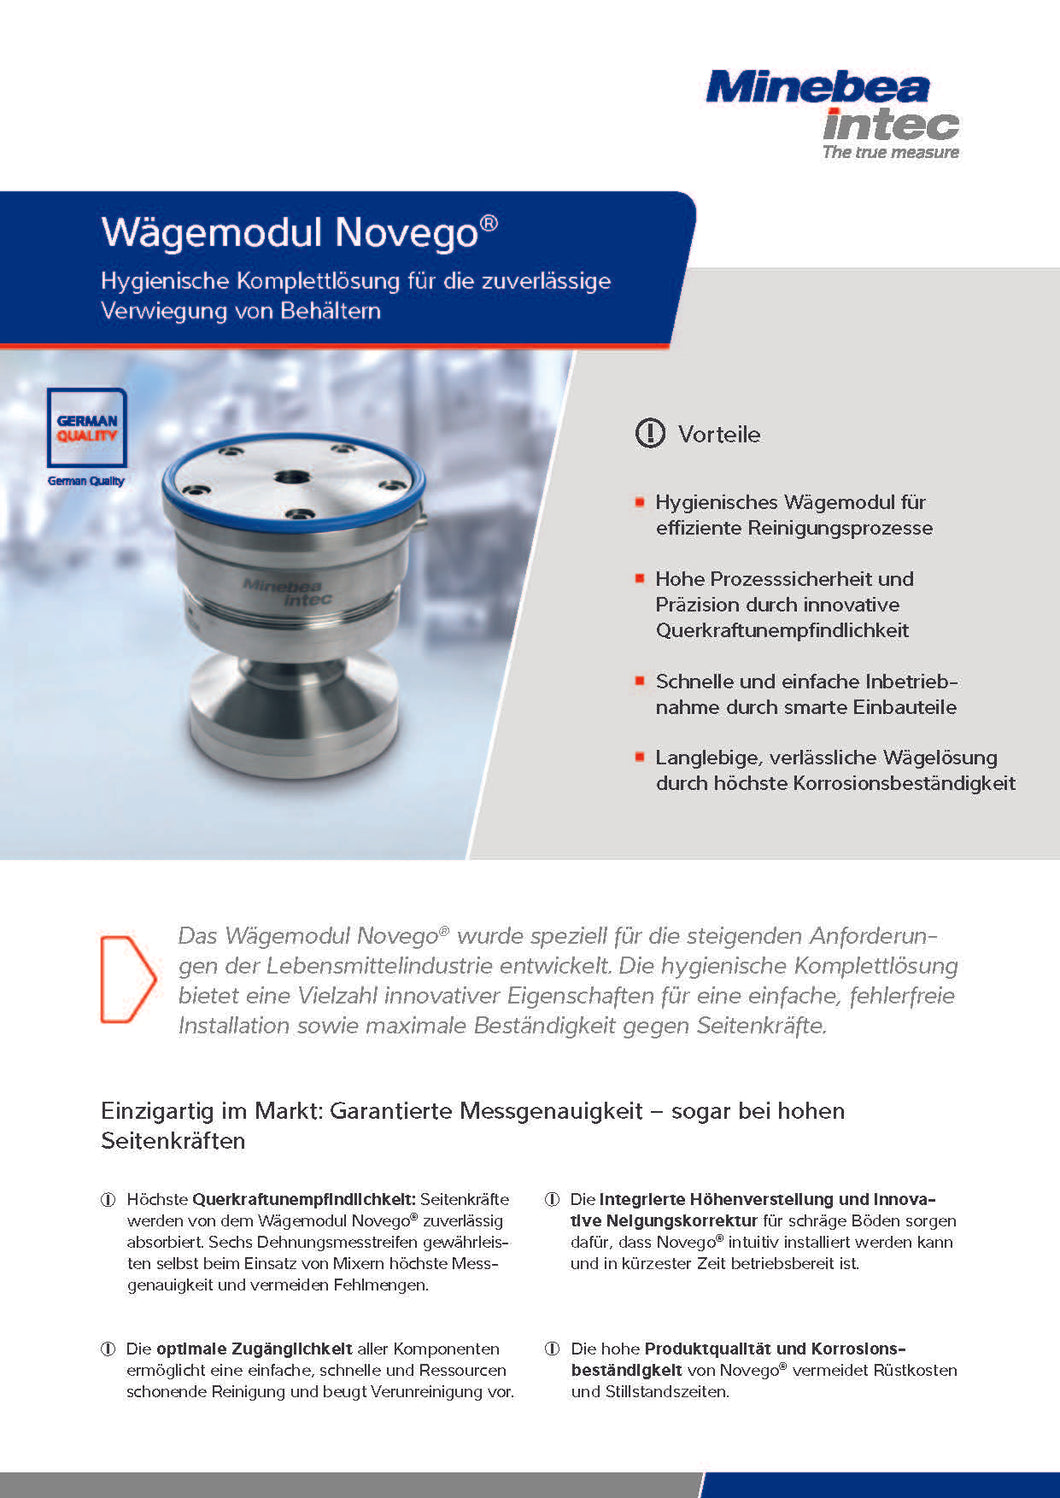 Wägemodul Novego C3, die hygienische Komplettlösung für Behälterwaagen